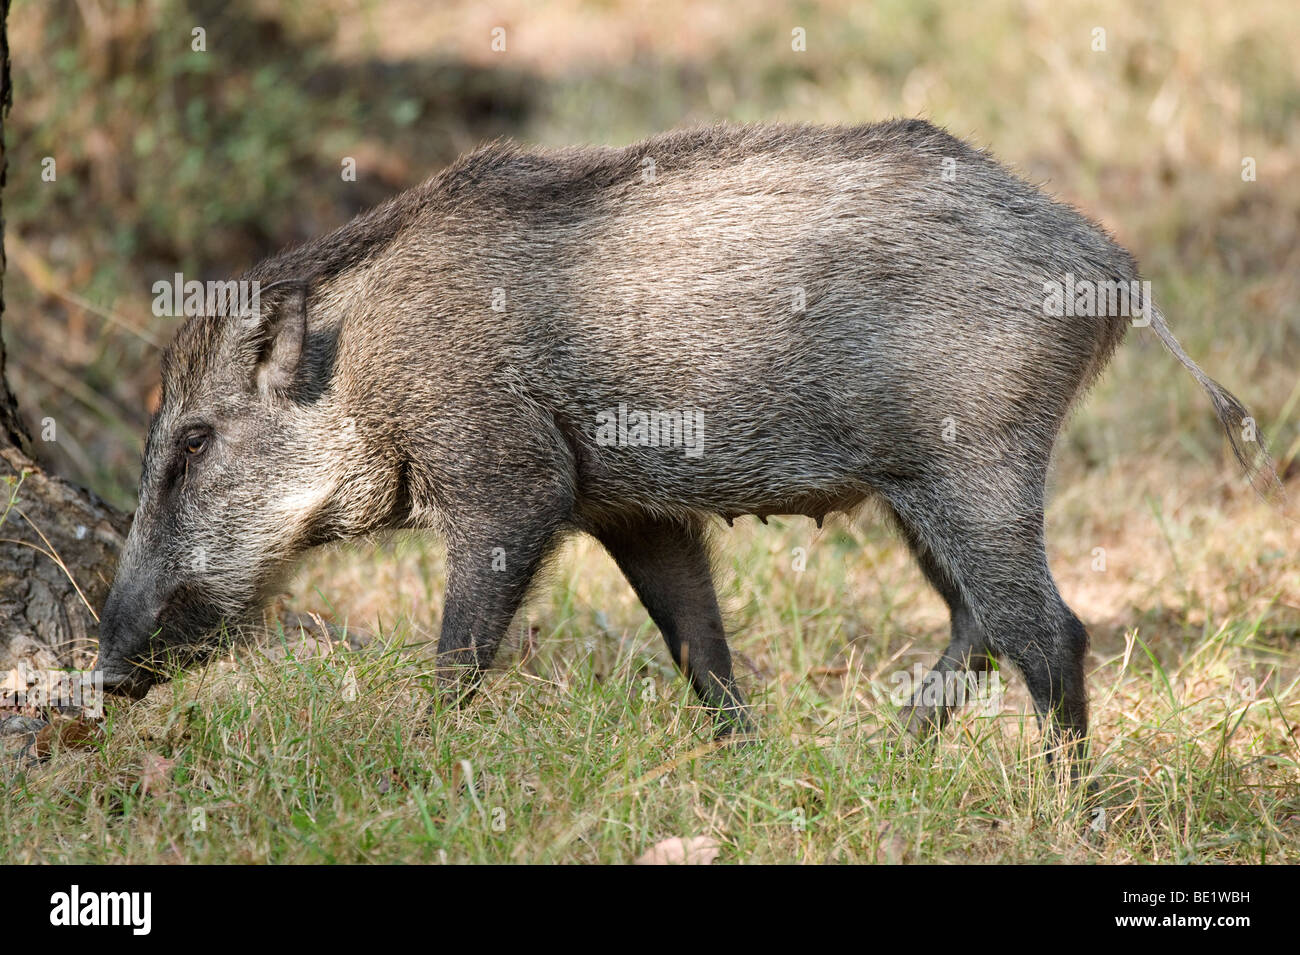 Wildschwein Sus Scrofa Bandhavgarh National Park Wald Schwein weiblich Stockfoto